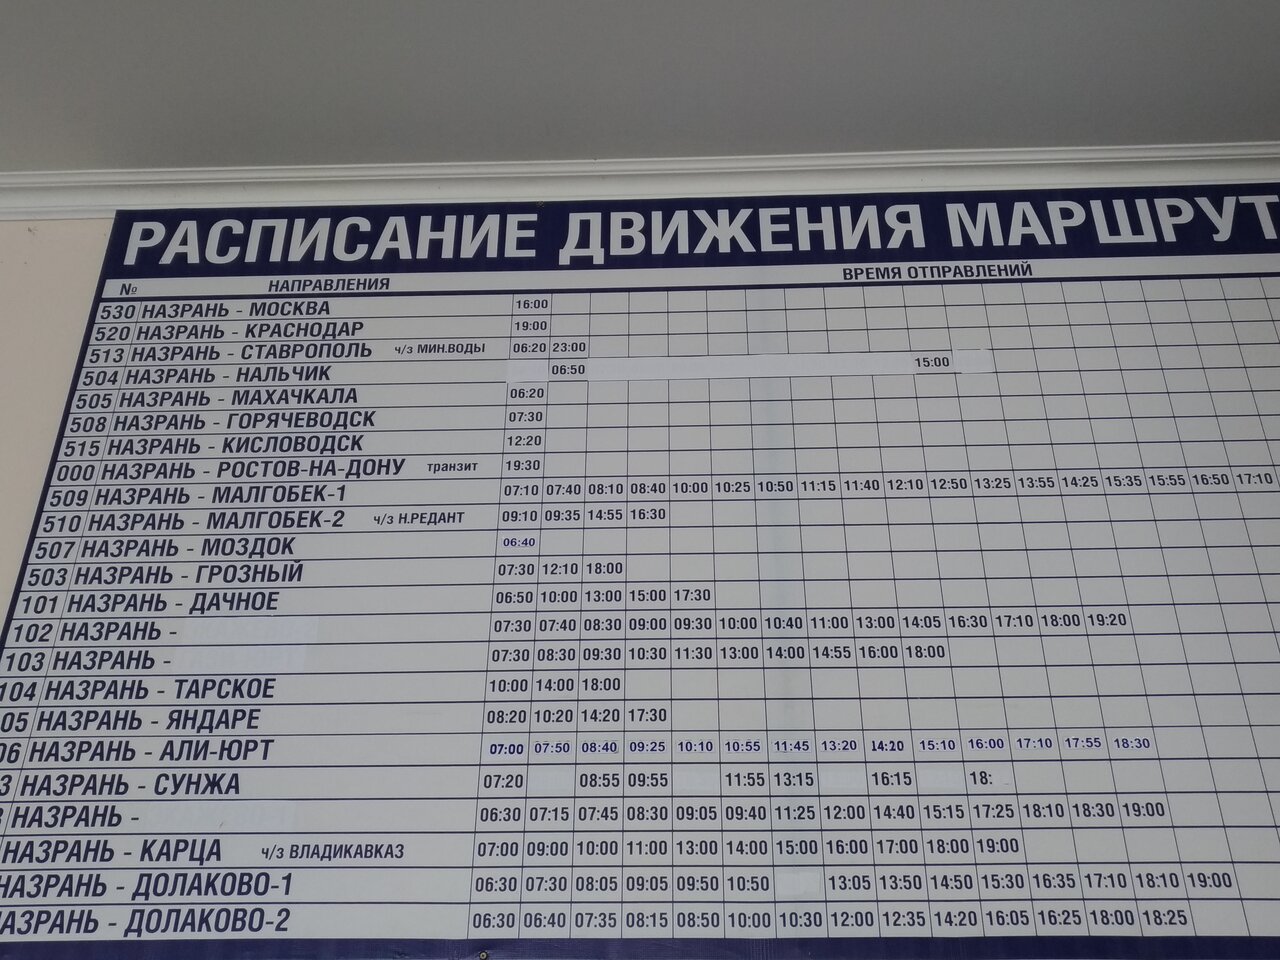 Аэропорт Владикавказ - Грозный